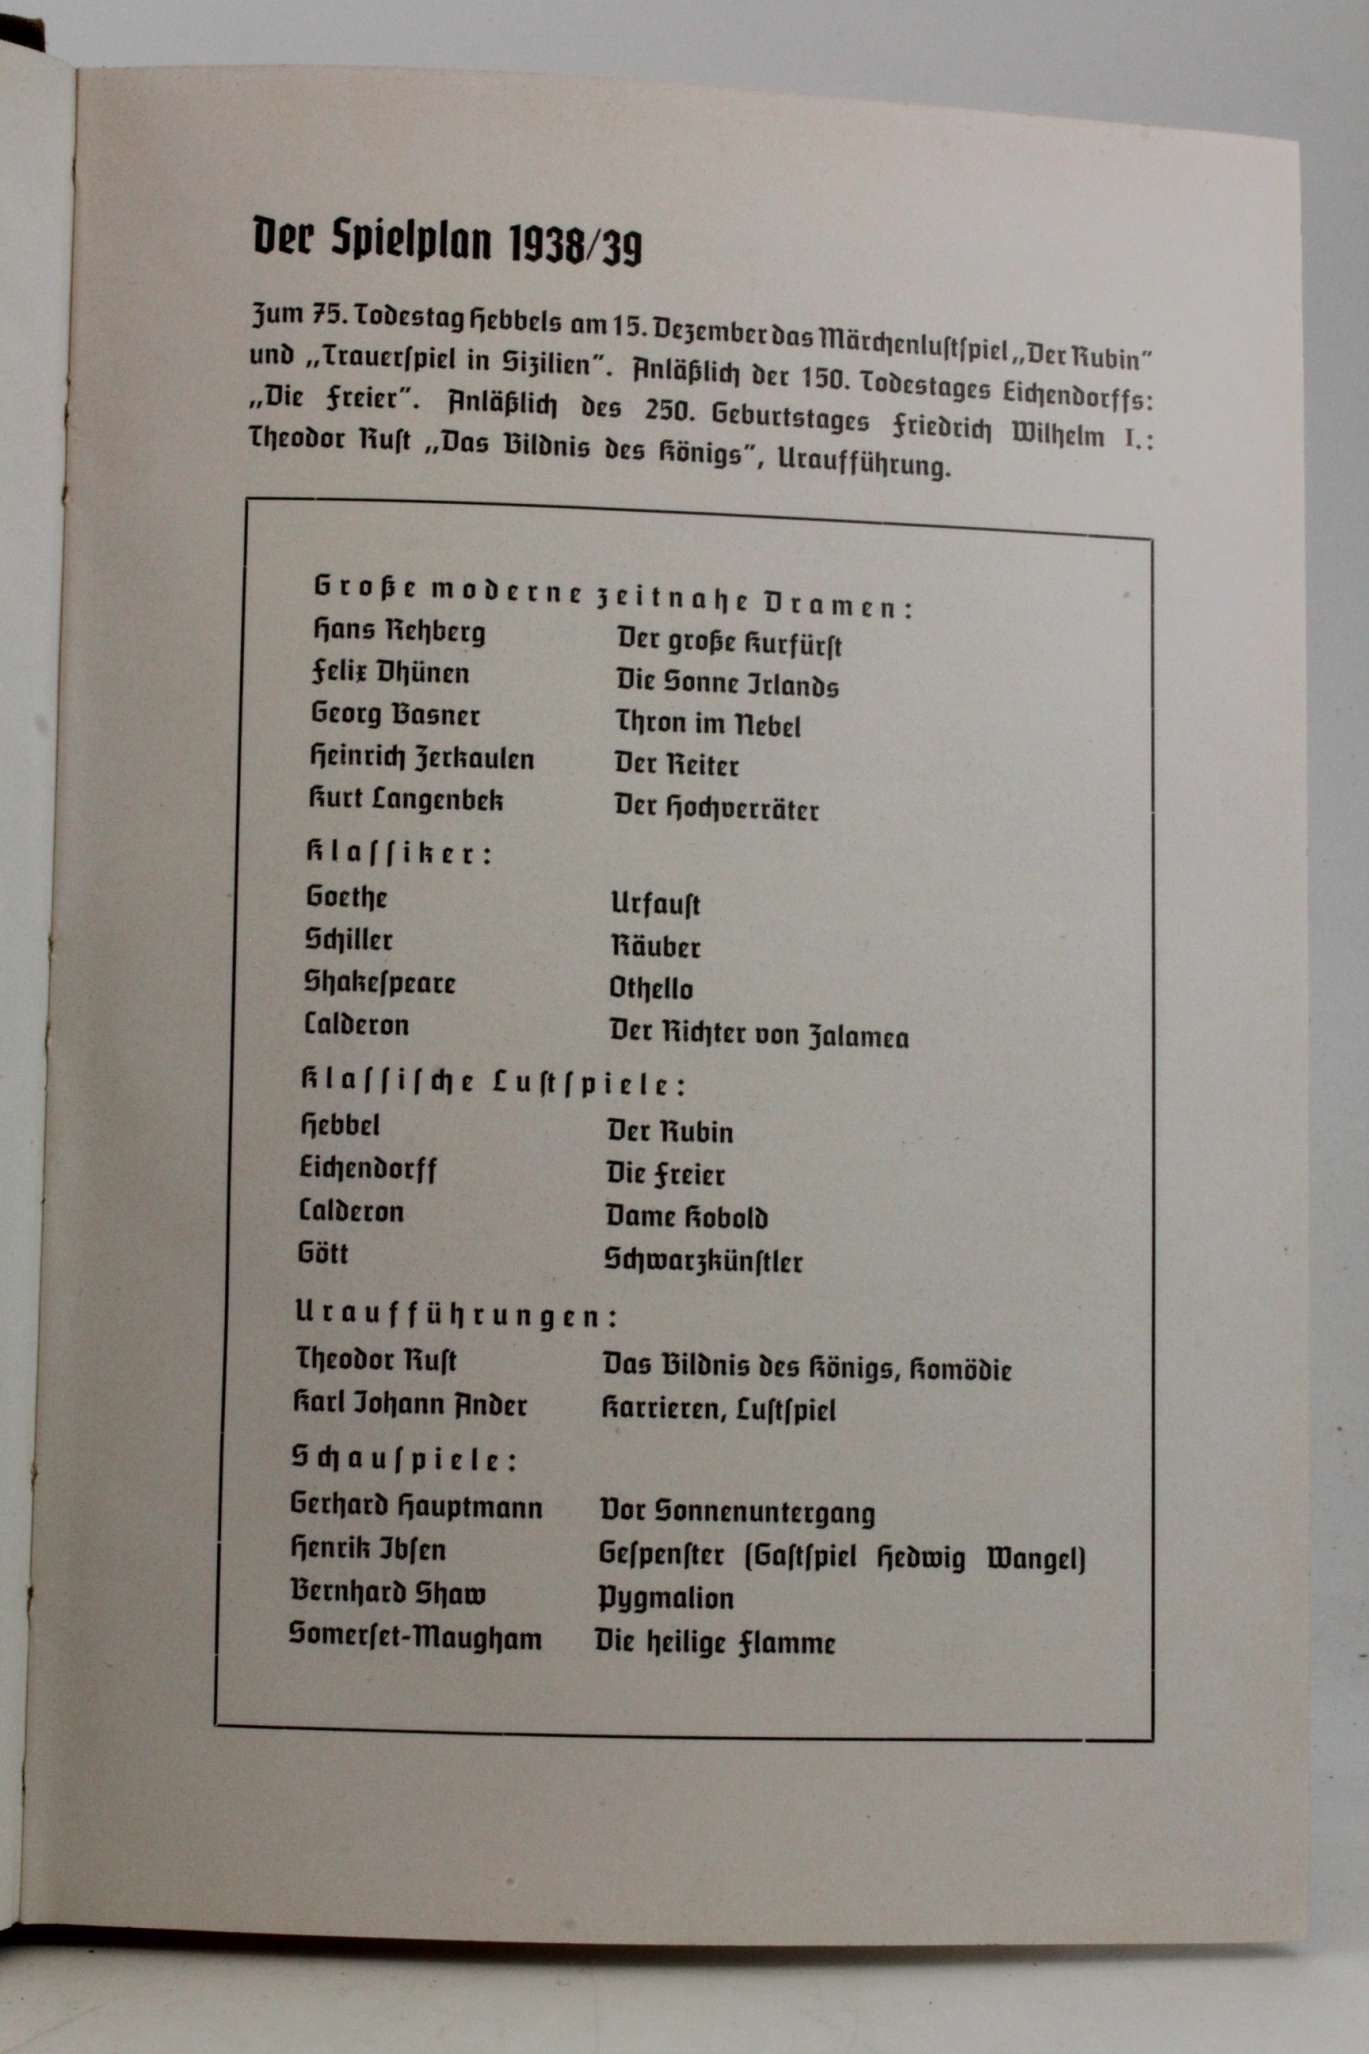 Dahmen (Hrsg.), Dr. Jost: Blätter des Nordmark-Landestheaters Spielzeit 1938/39